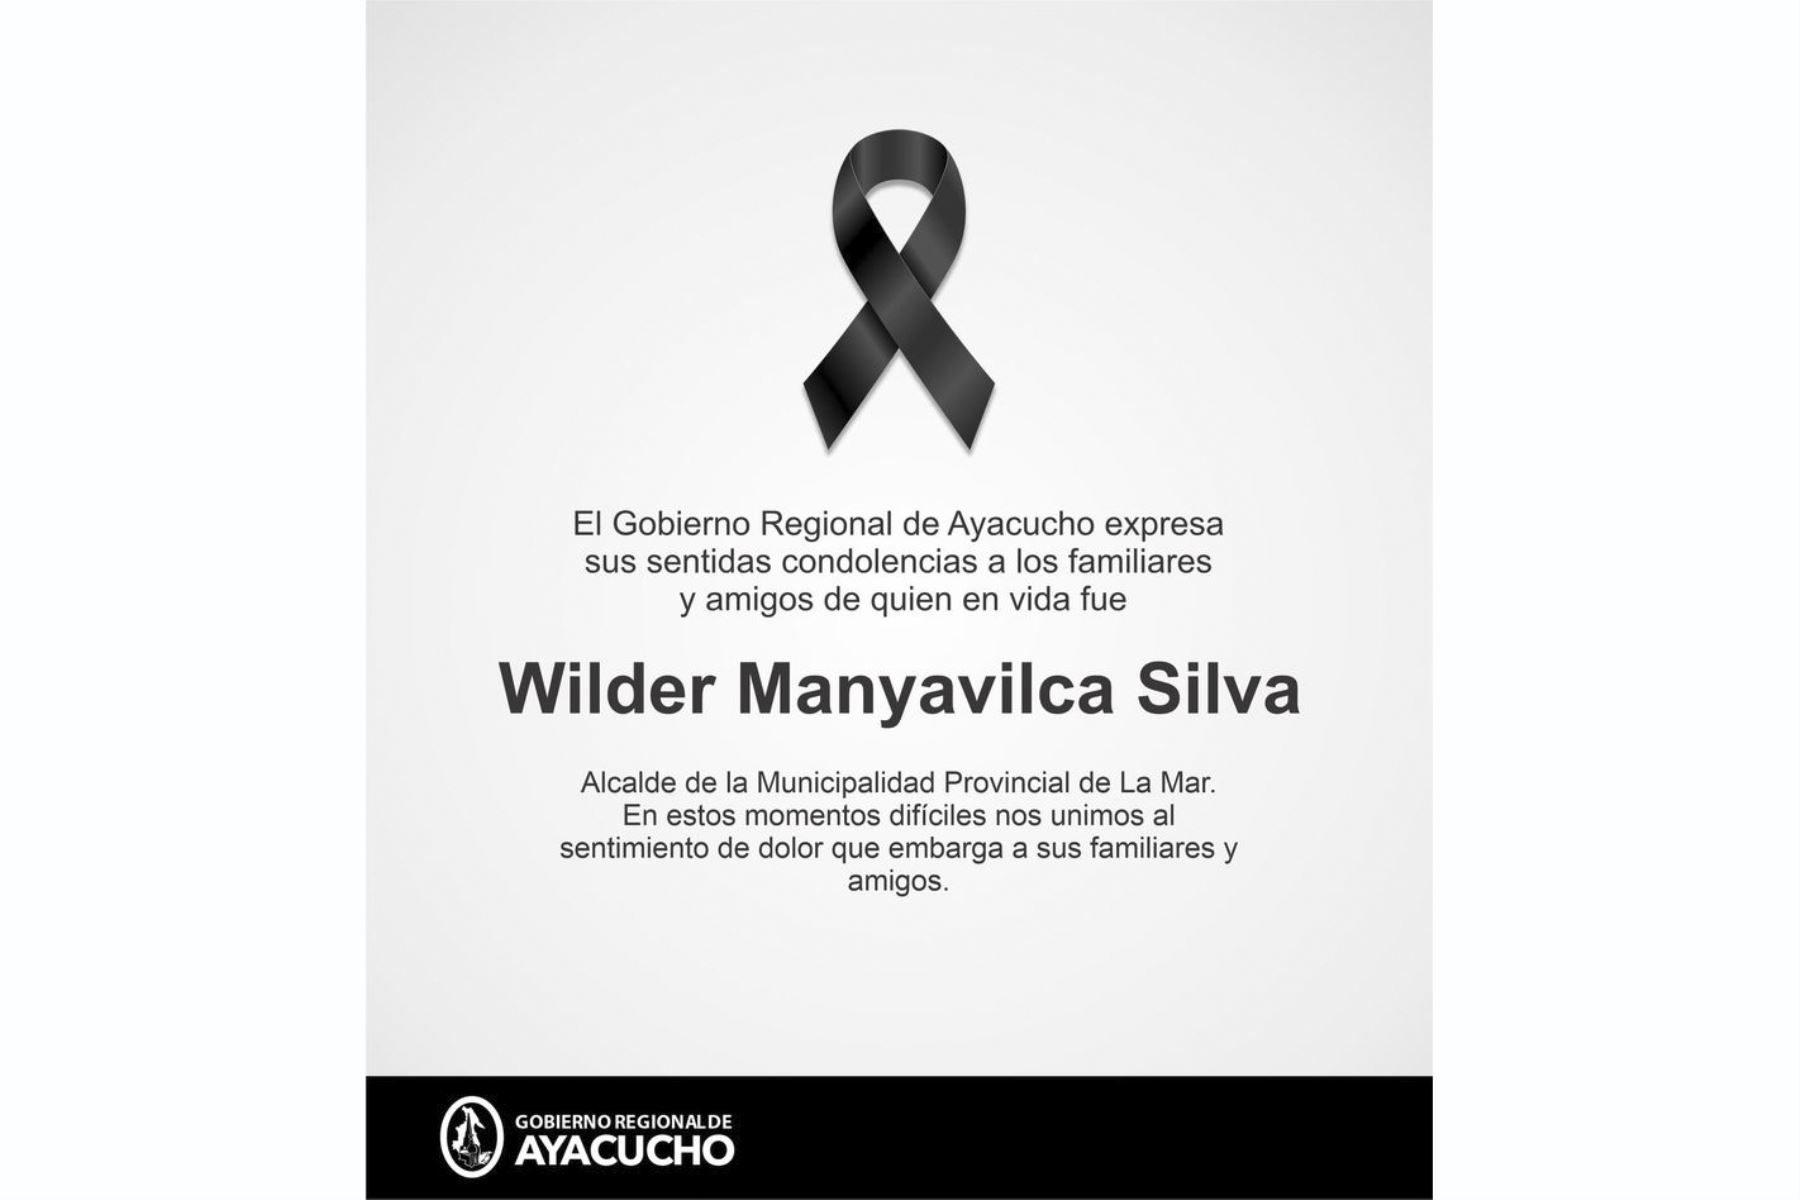 El alcalde provincial de La Mar, Wilder Manyavilca Silva, fue asesinado en la comunidad de Las Palmas, en el Vraem. Foto: internet.